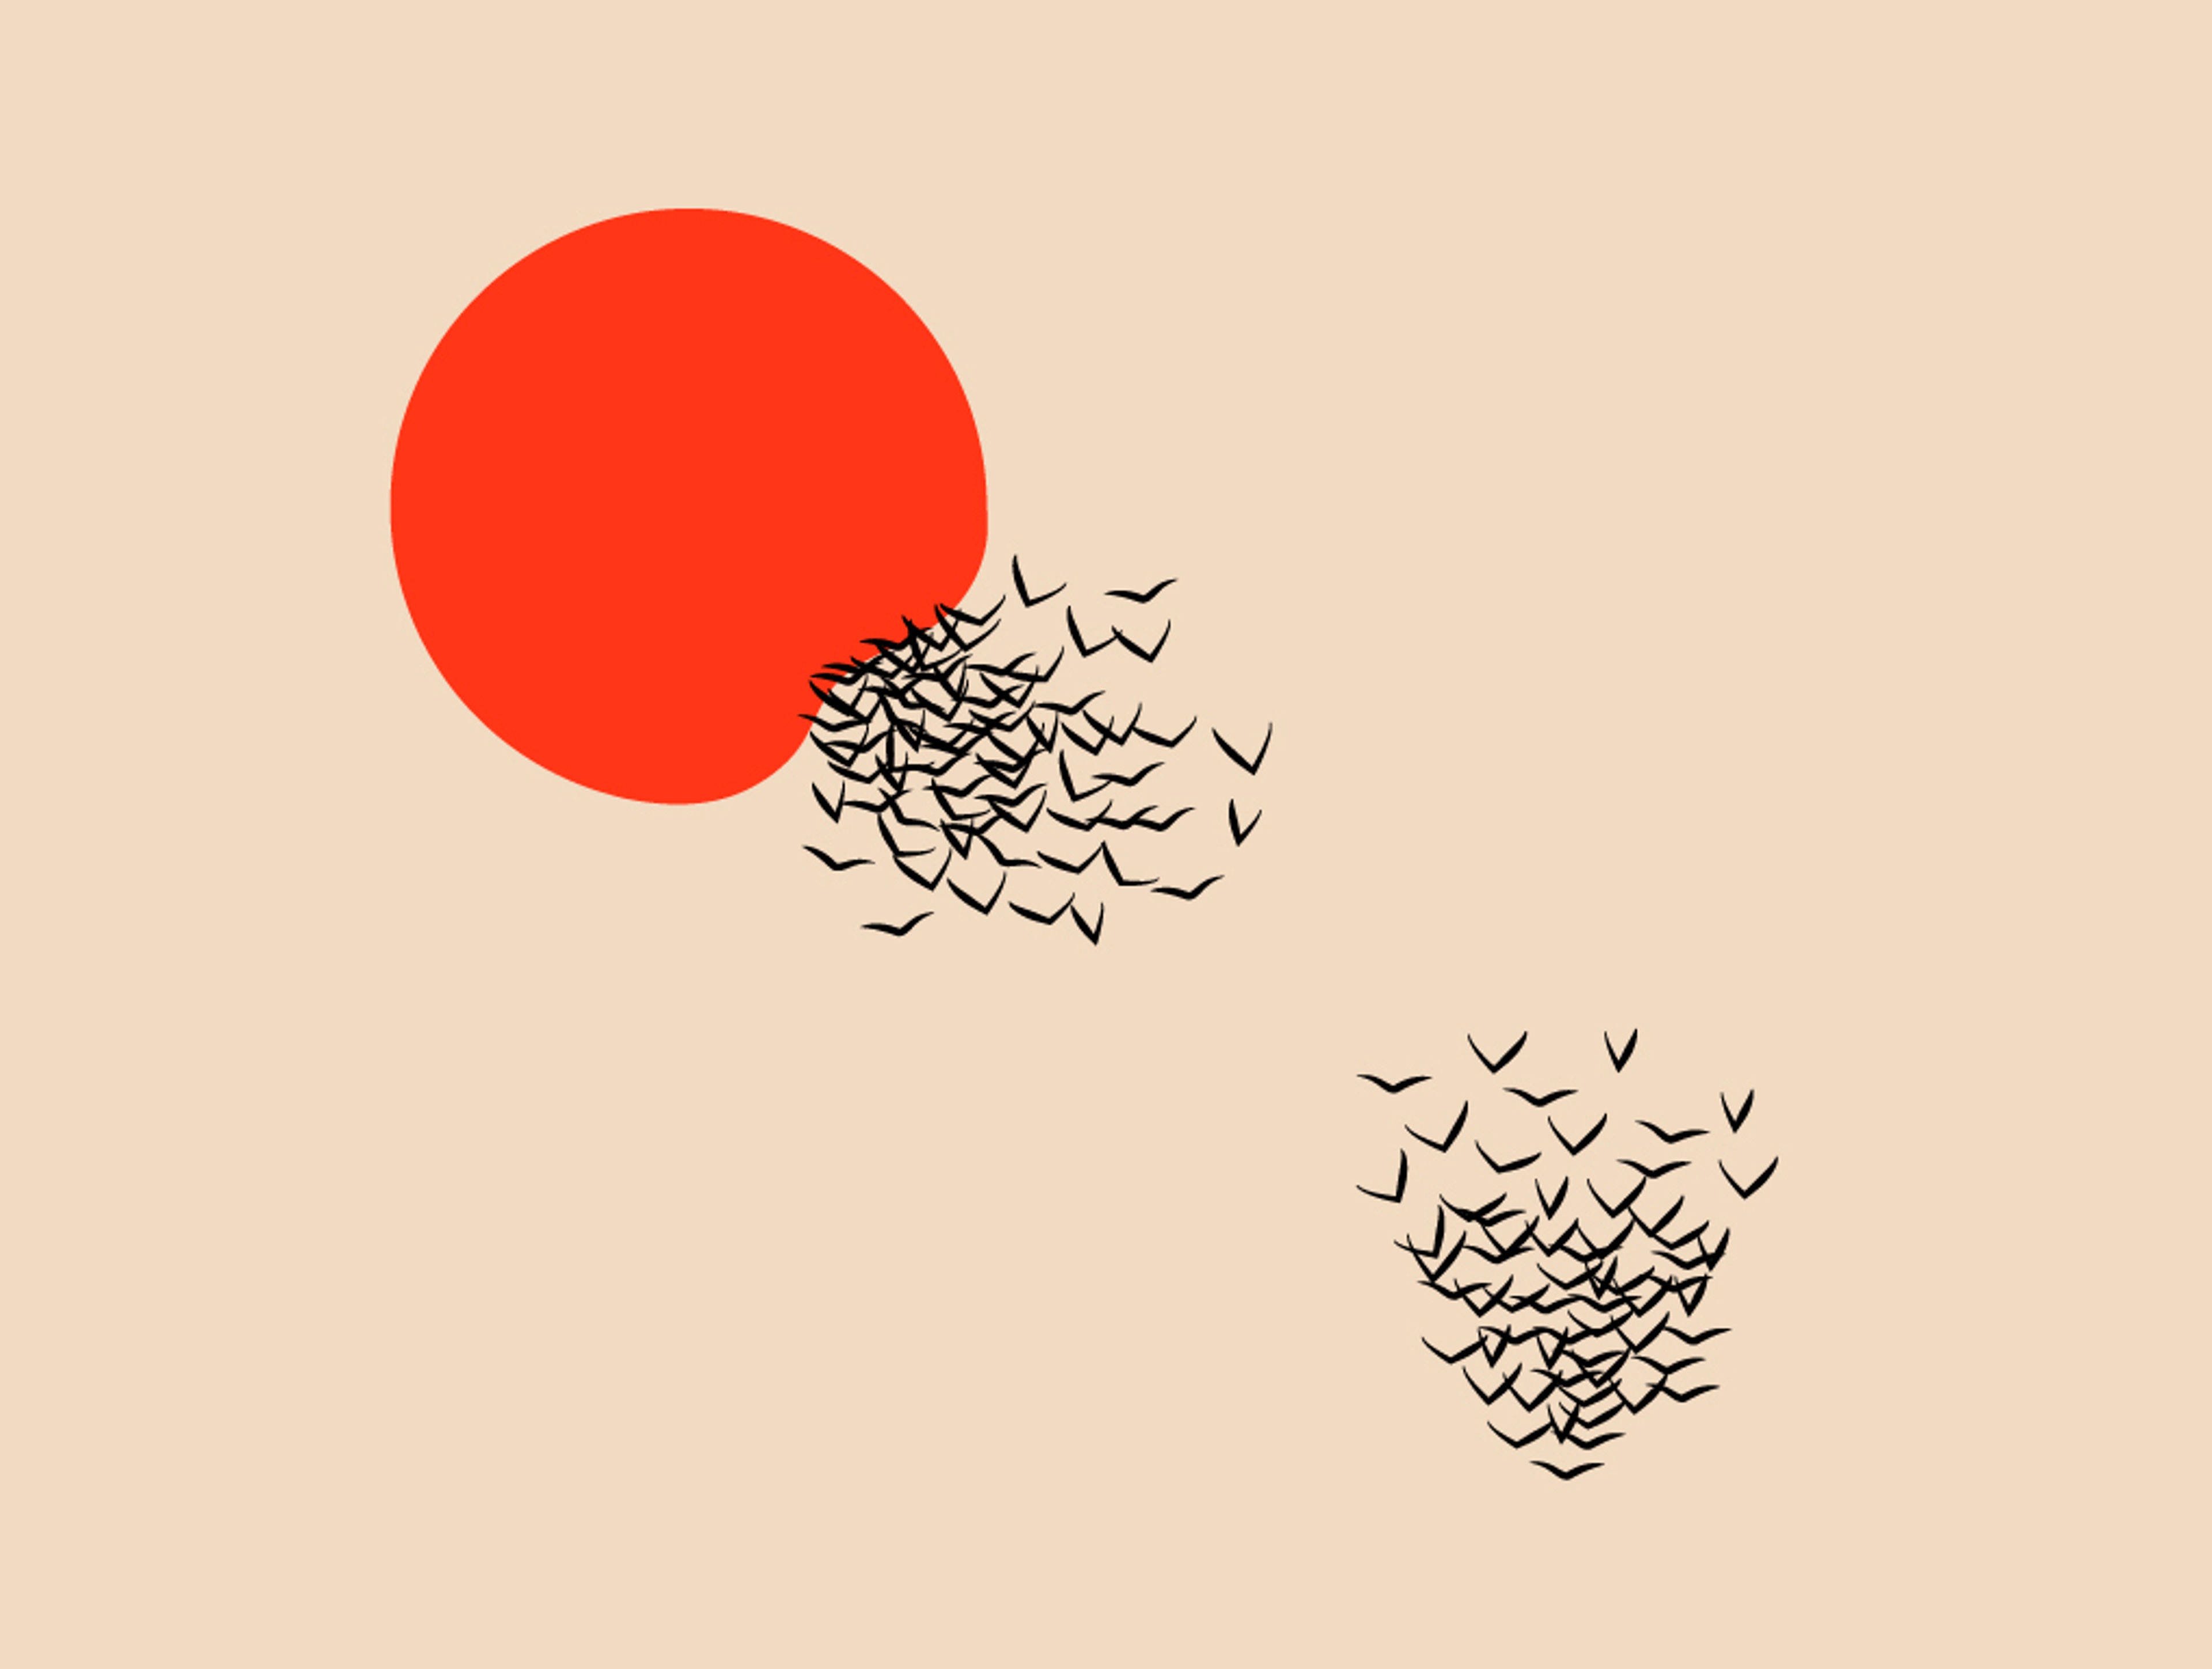 Illustration du chapitre "Créatures" montrant un soleil rouge et des nuées d'oiseaux